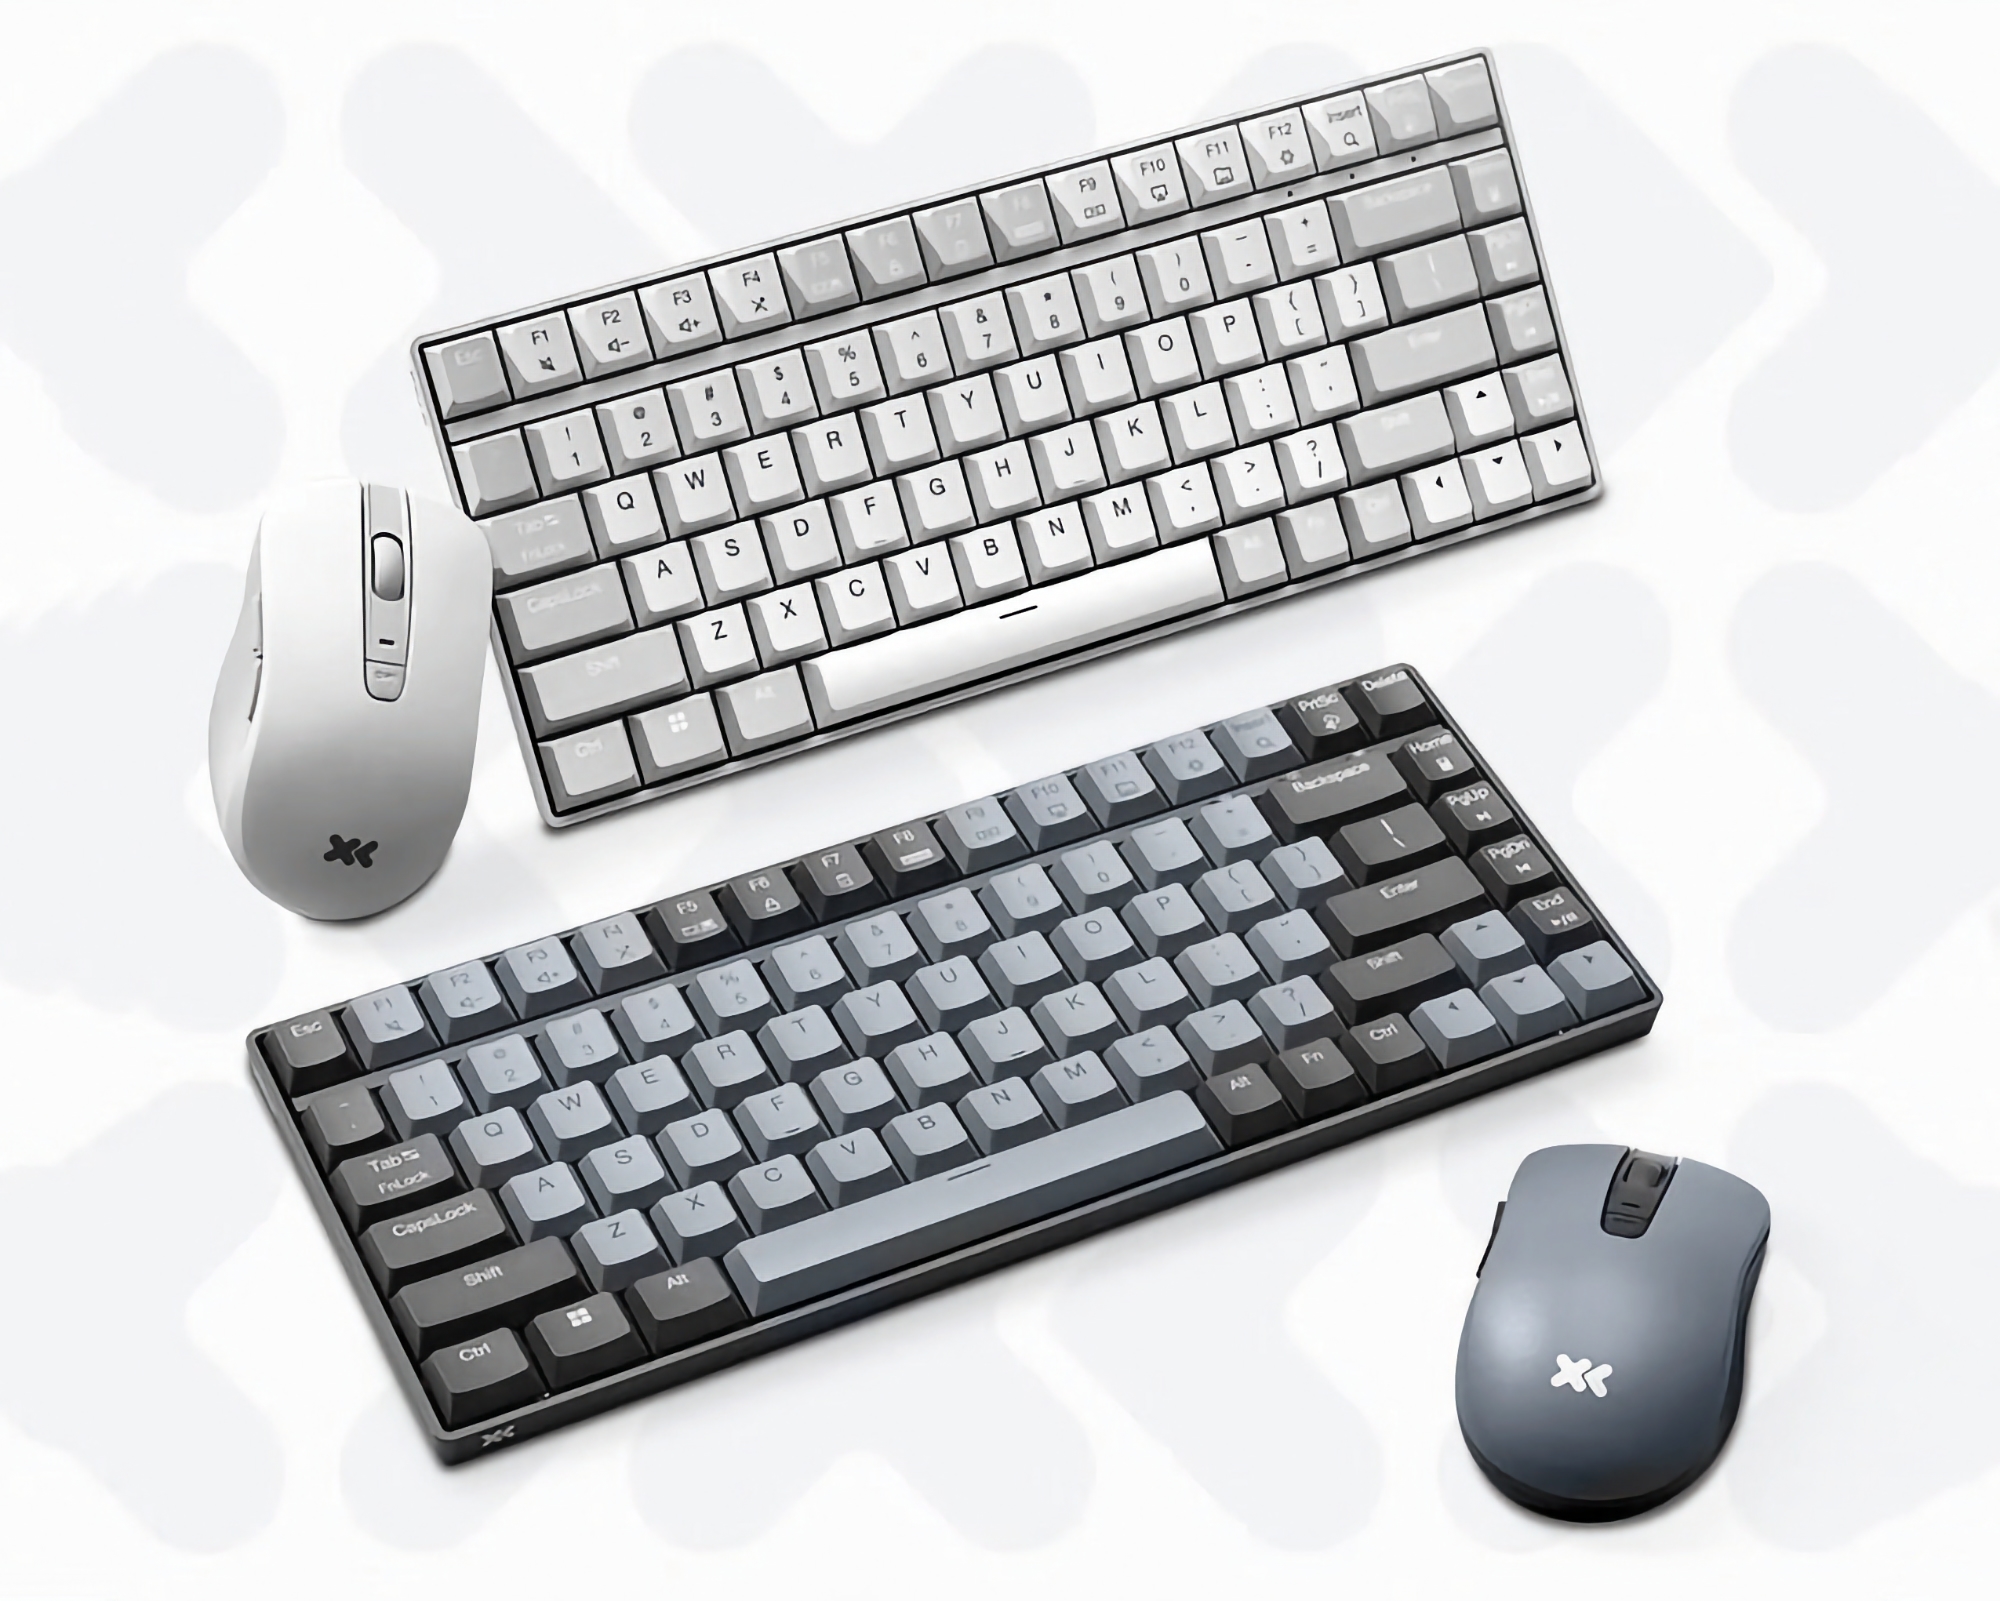 Budget-kit: Lenovo presenterade ett trådlöst tangentbord och mus för $21